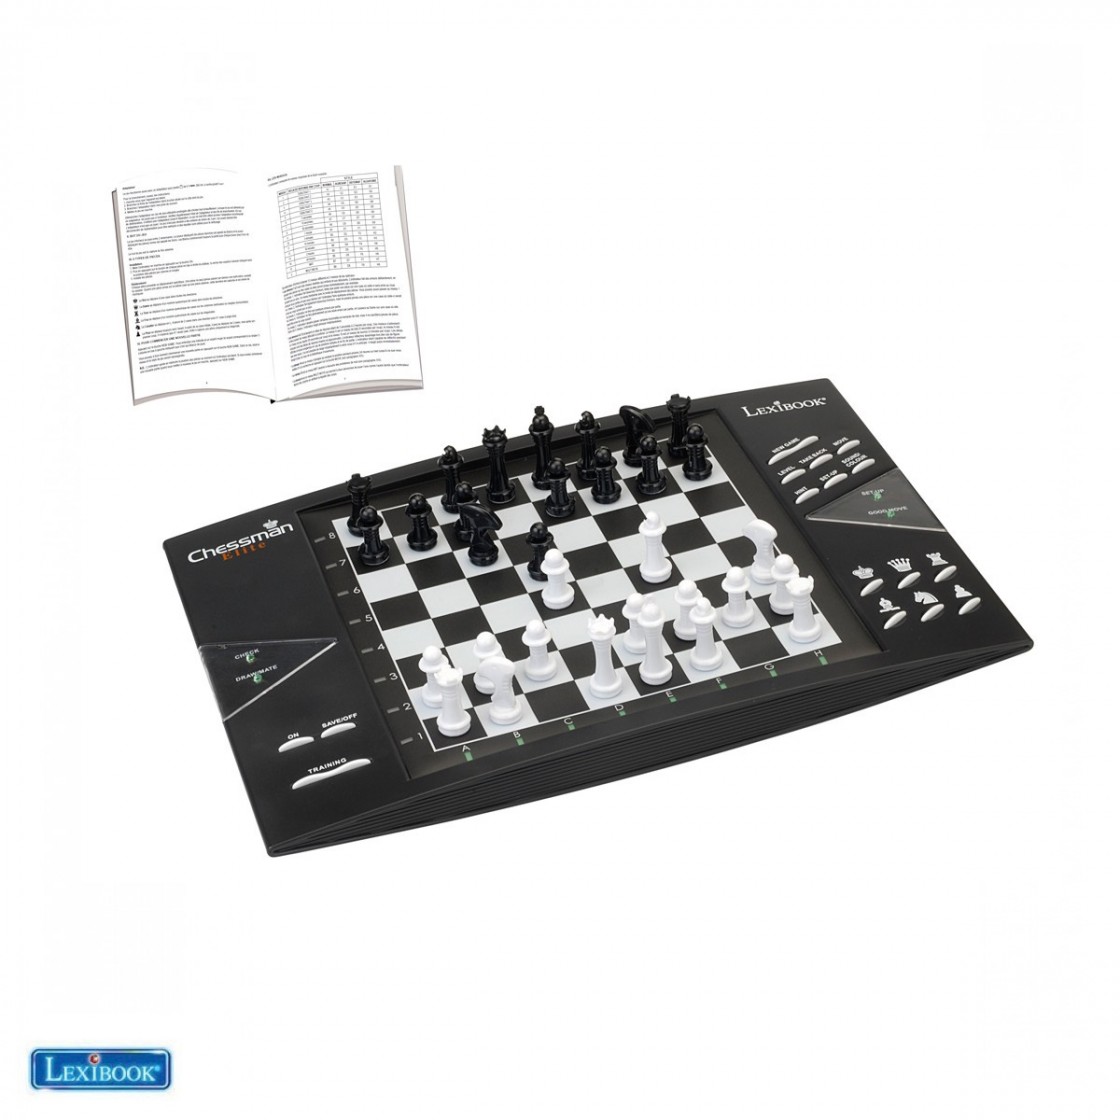 ChessMan® Elite, Elektronisches Schachspiel mit Berührungstastatur